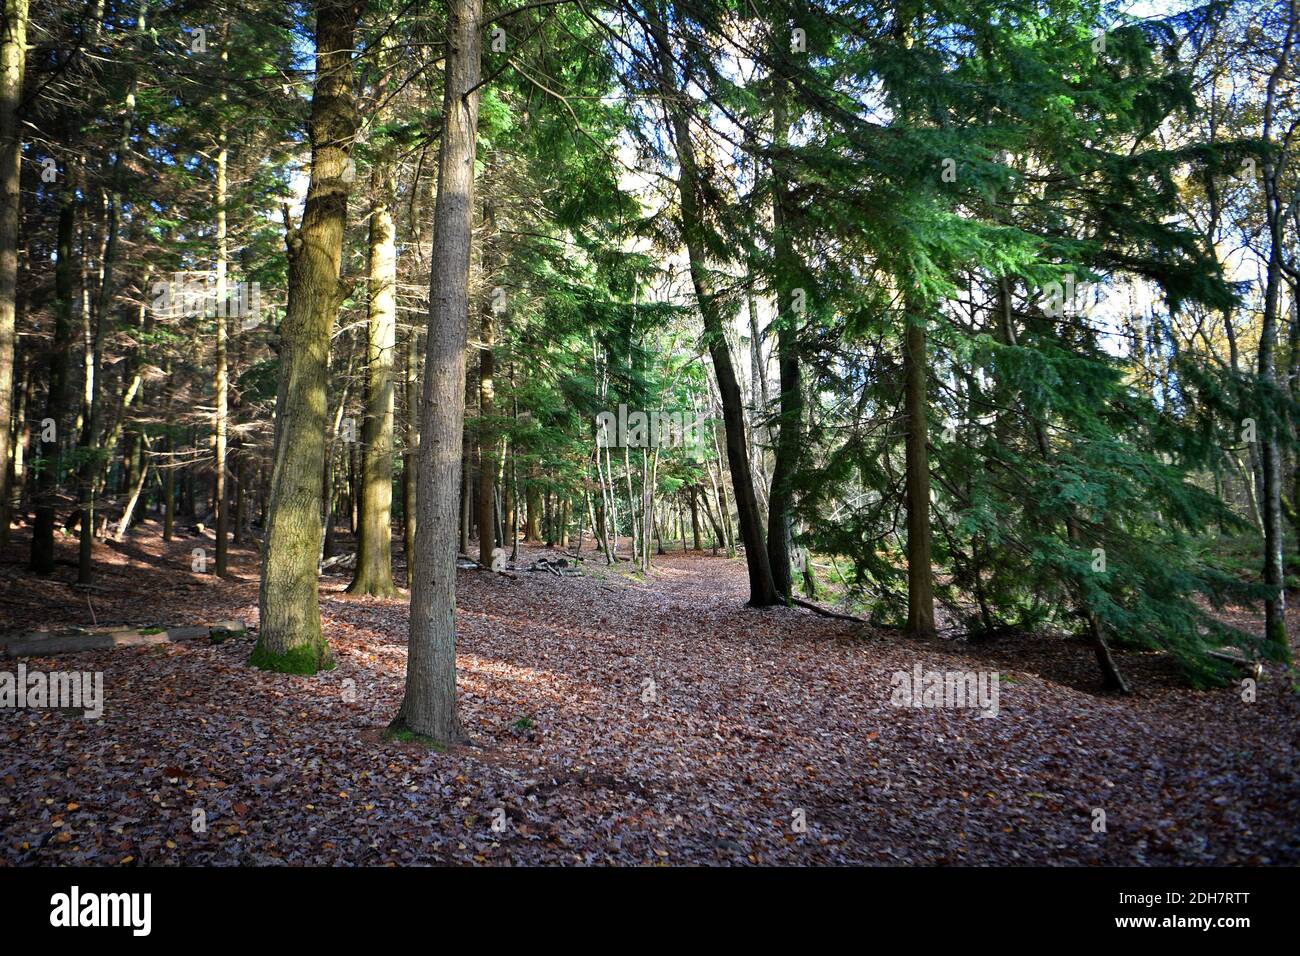 Fotos für eine Funktion auf Wellesley Woodland, Aldershot - Herbstwochenende Spaziergänge Feature. Waldwege abseits der Fleet Road, Donnerstag, 12. November 2020. Stockfoto